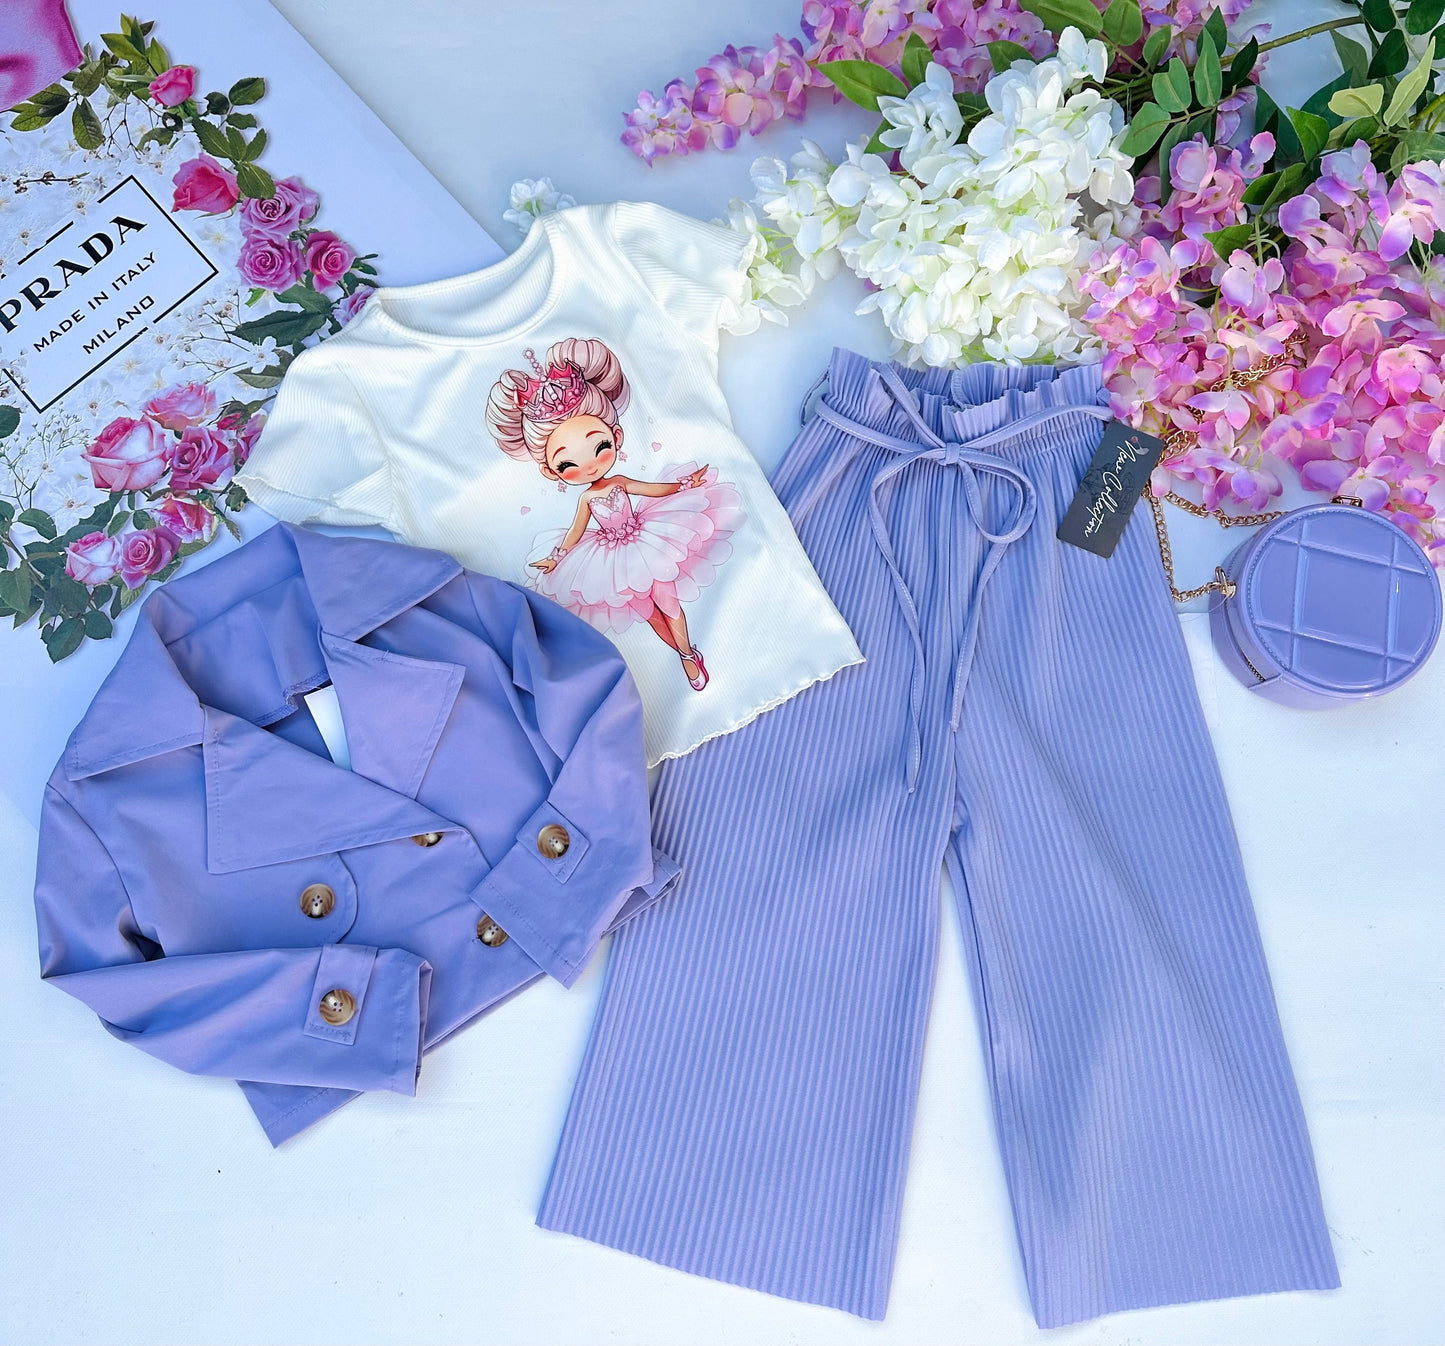 Lilac culottes pants